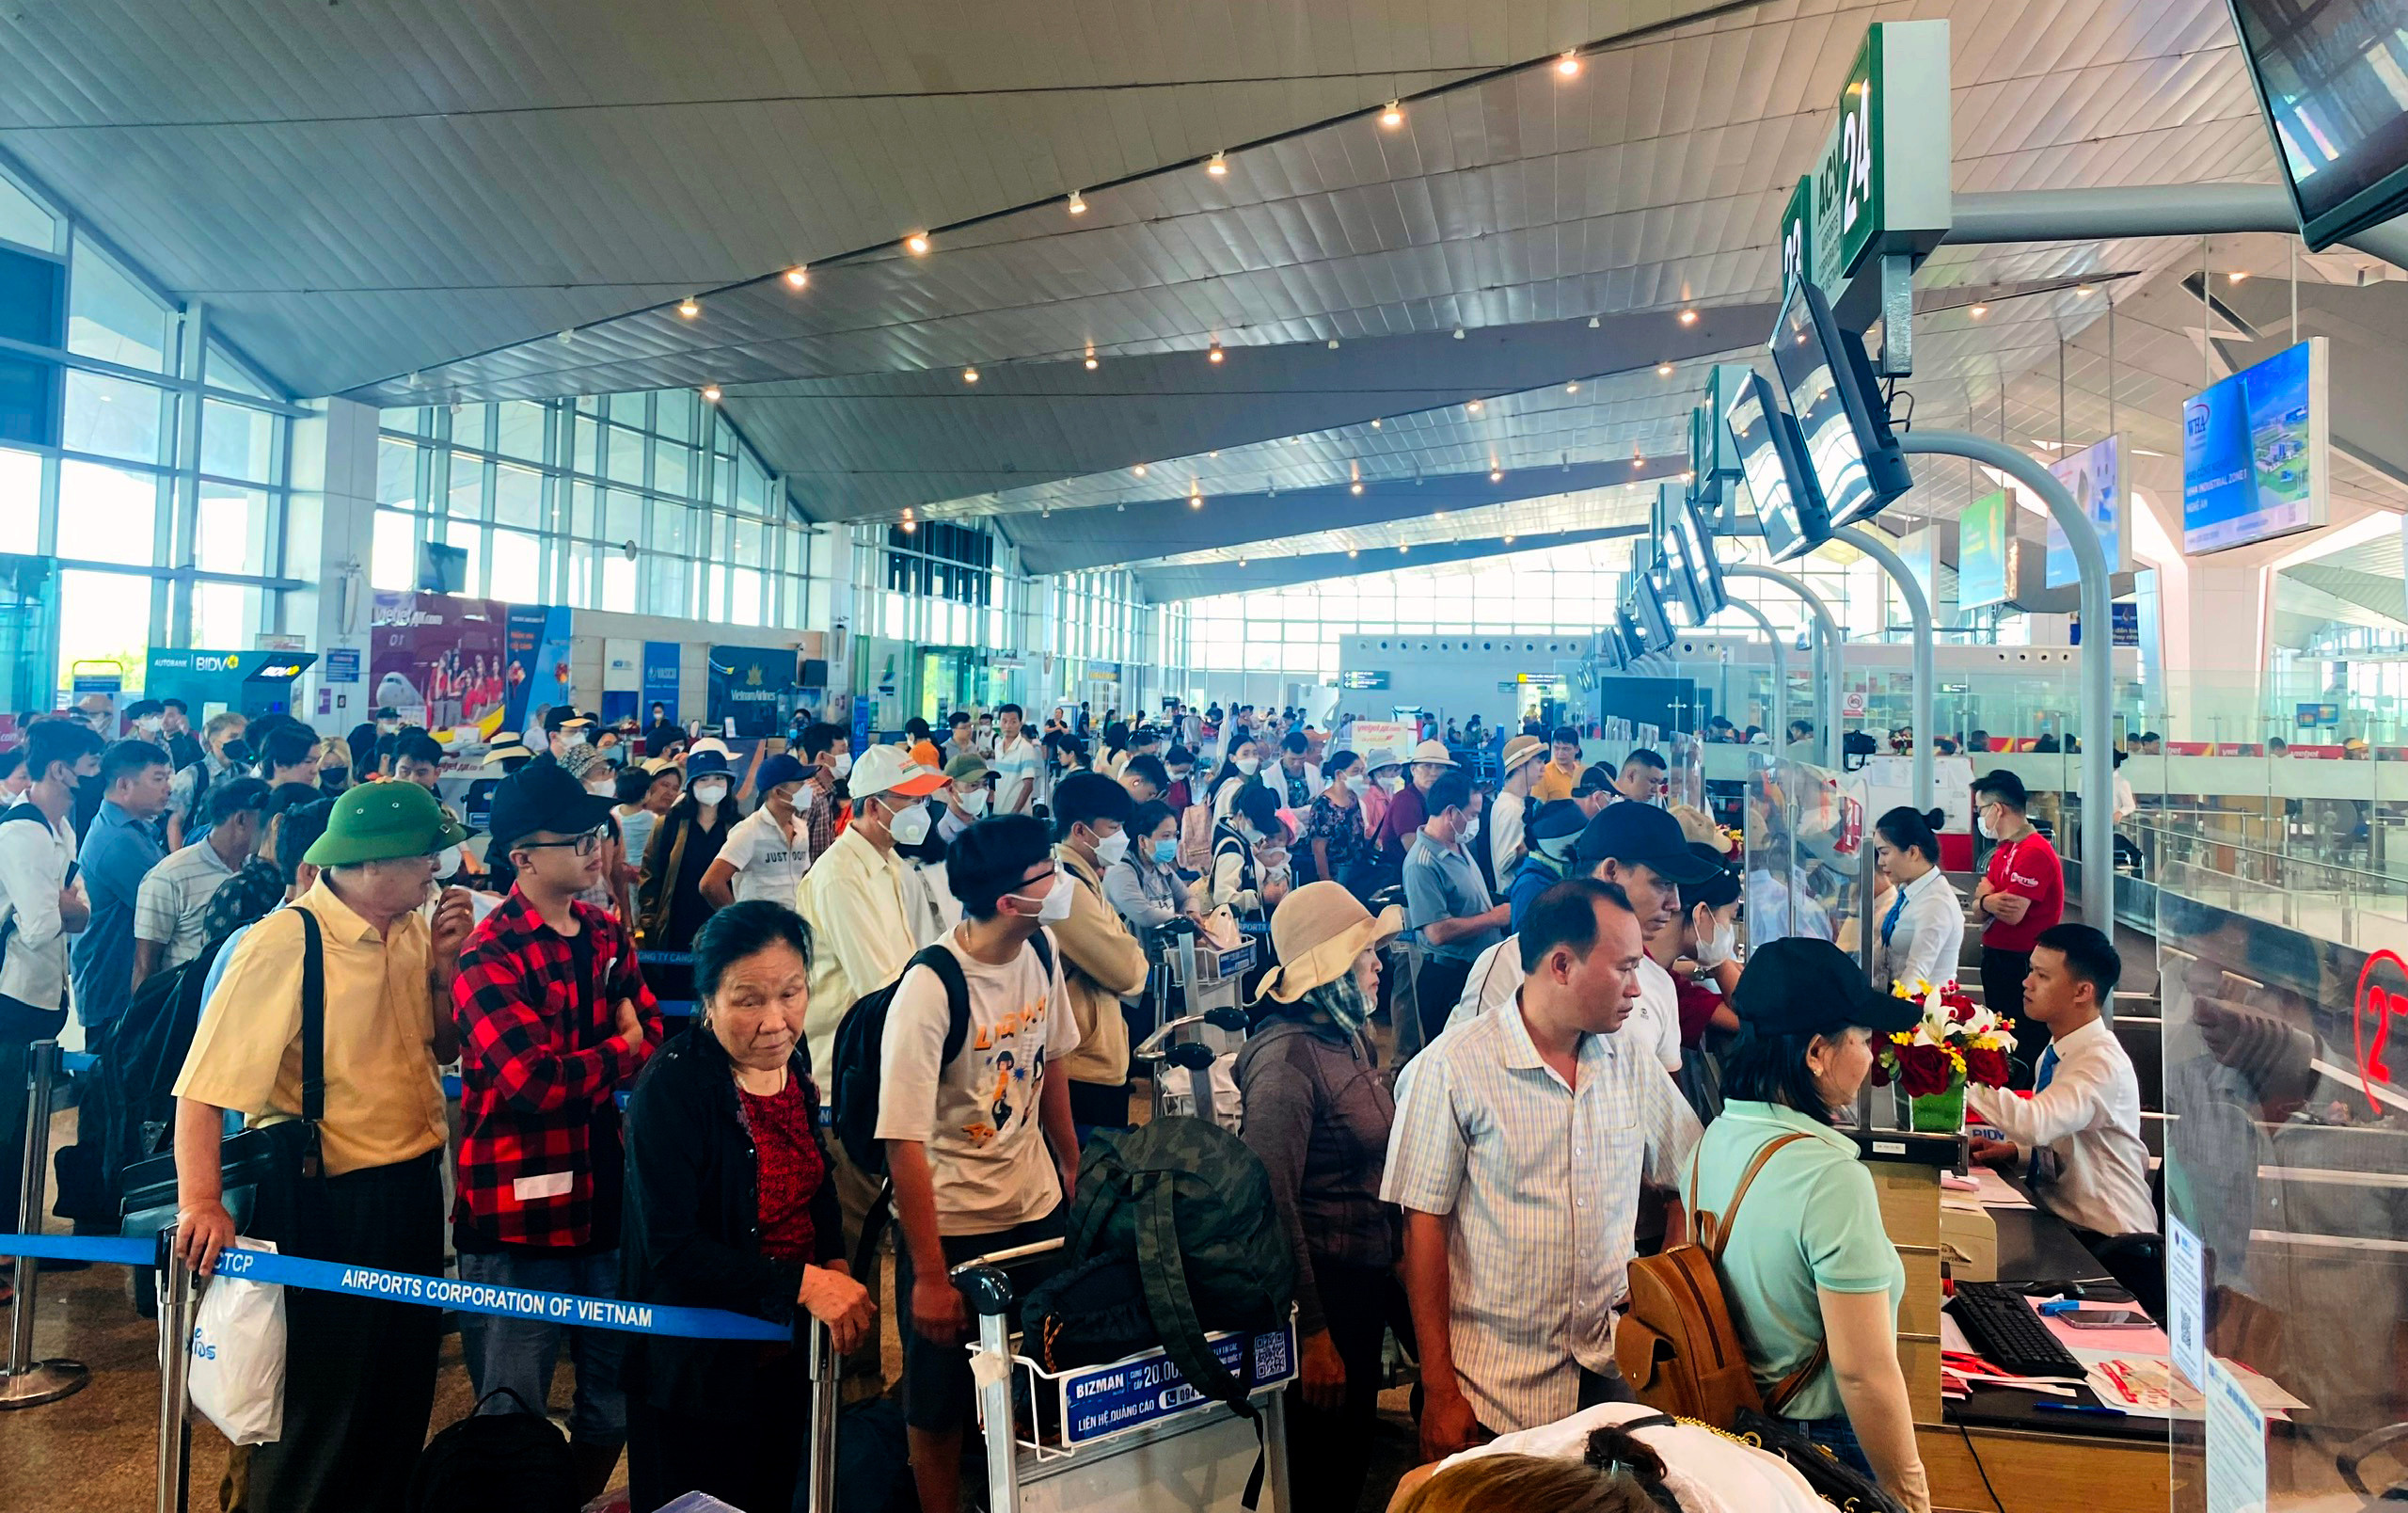 bna_Lượng hành khách tại sân bay Vinh luôn tăng cao trong các dịp nghỉ lễ ảnh QA.jpg